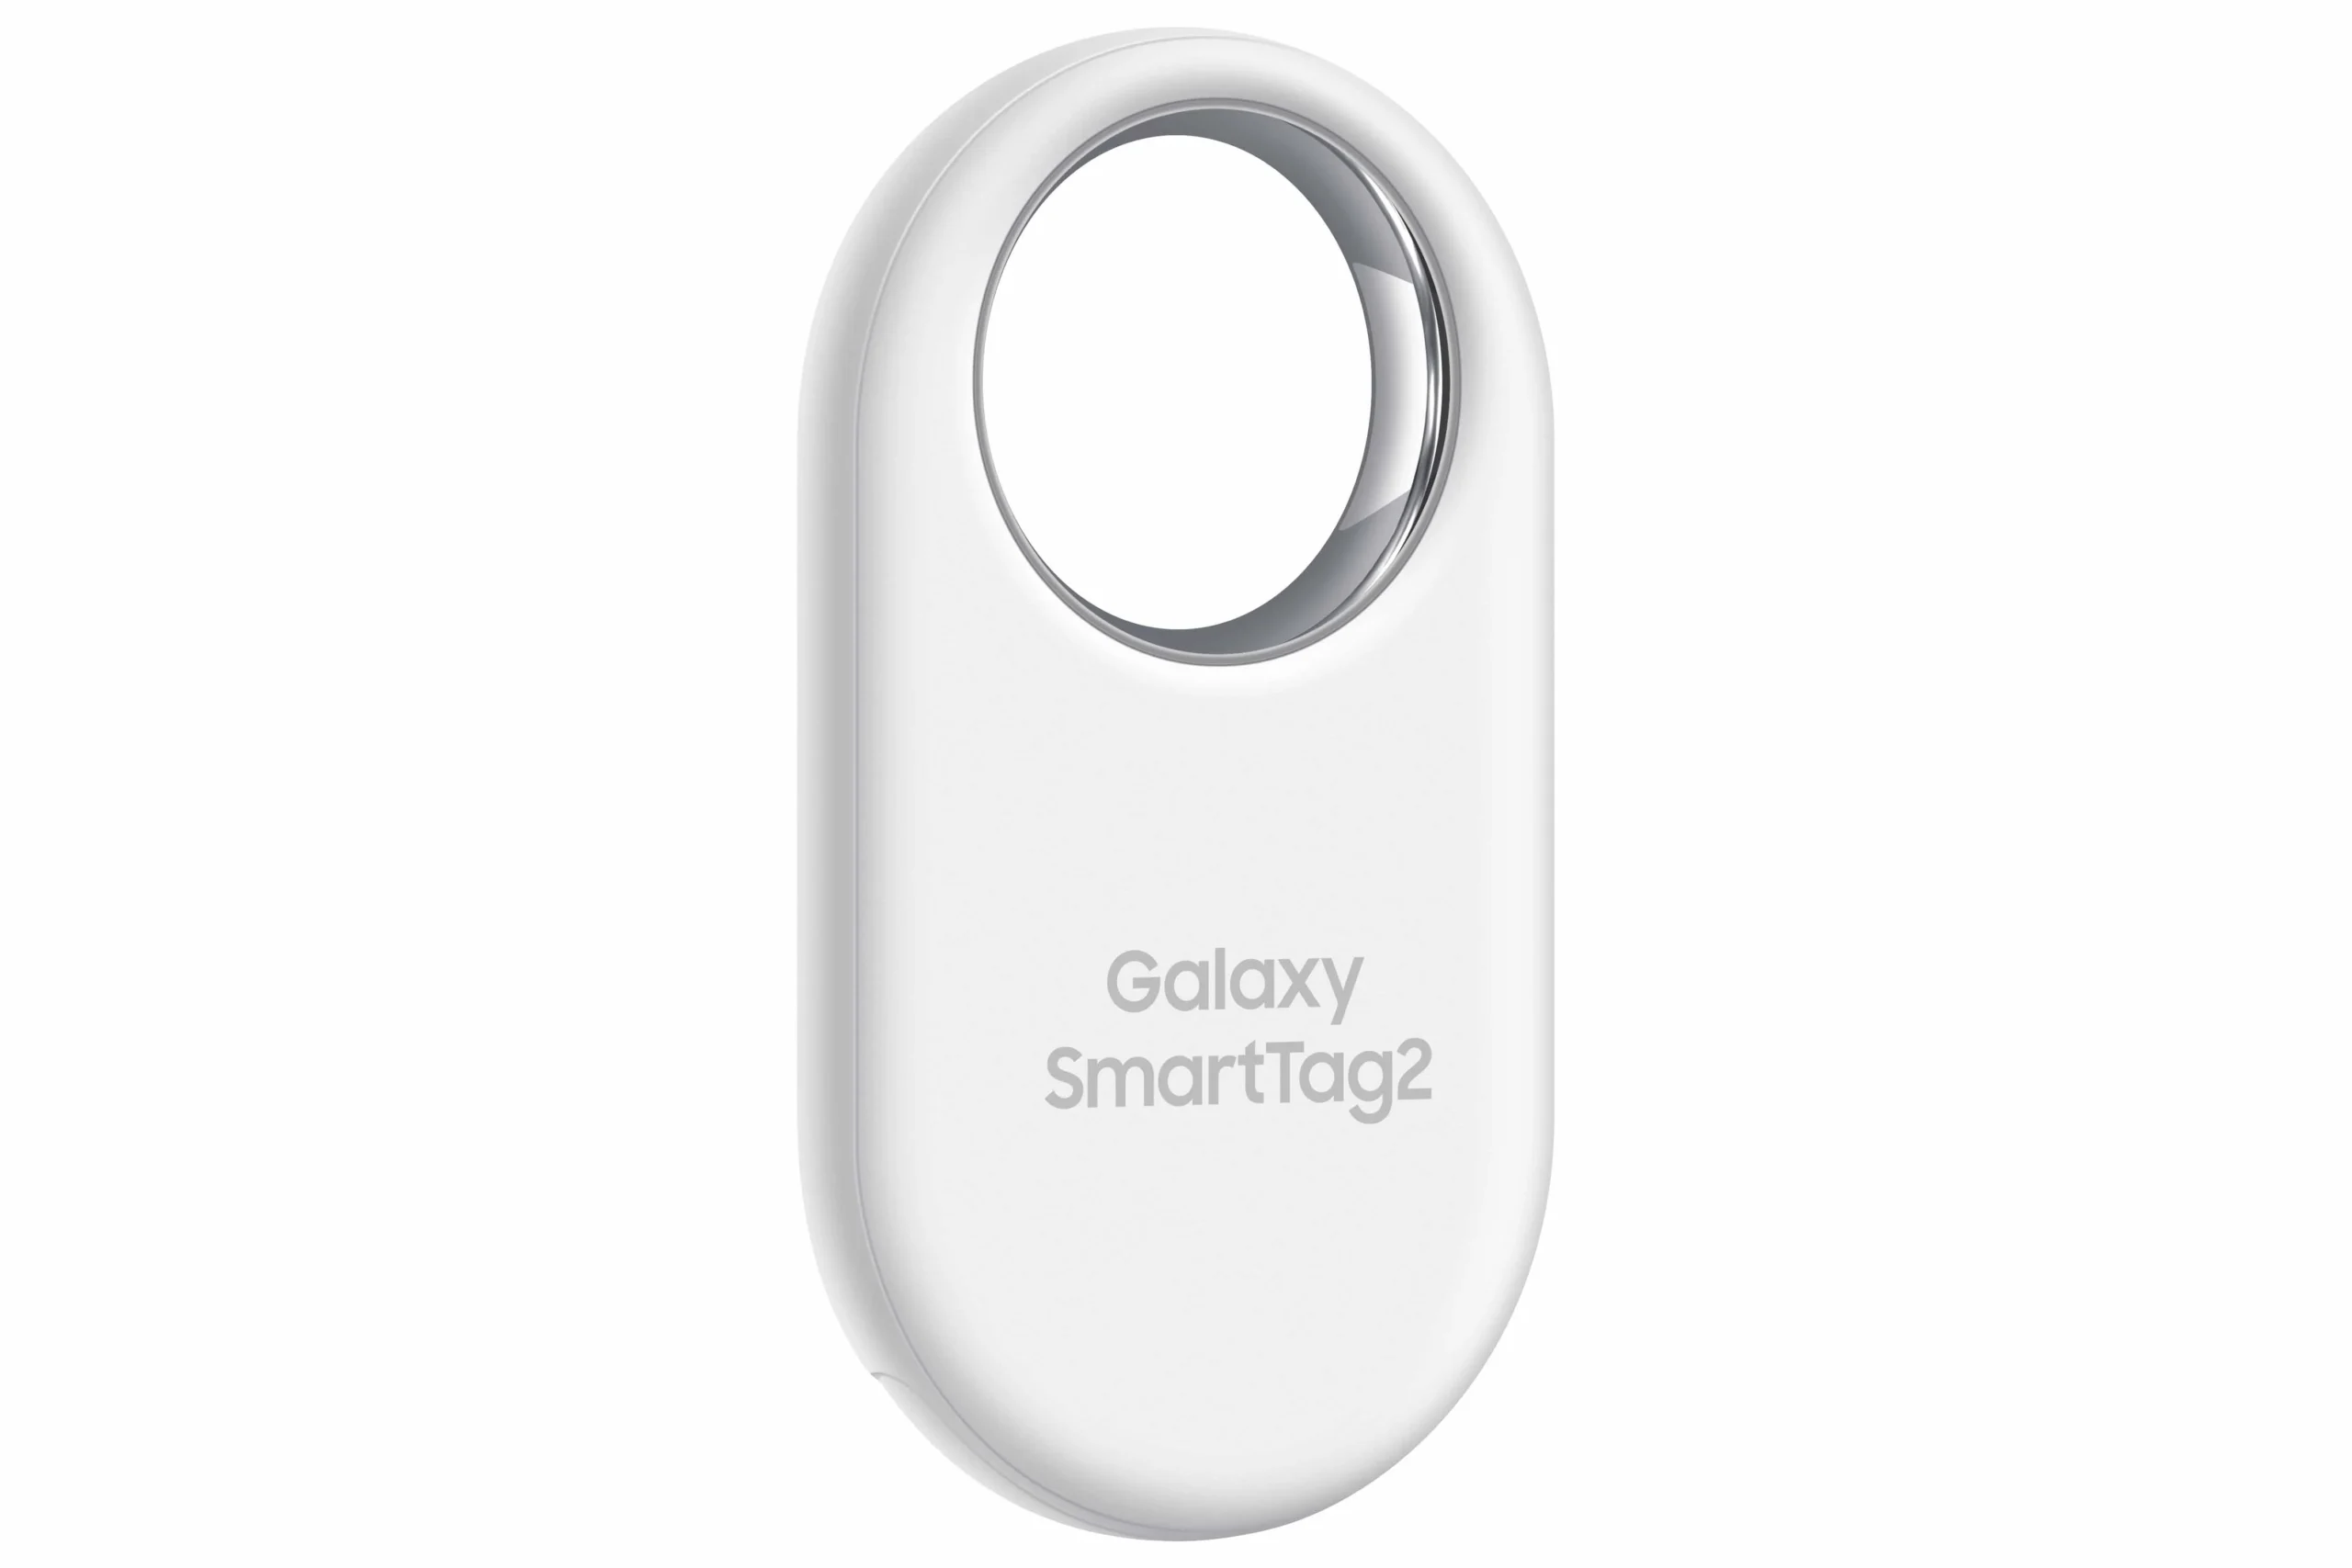 Galaxy SmartTag2